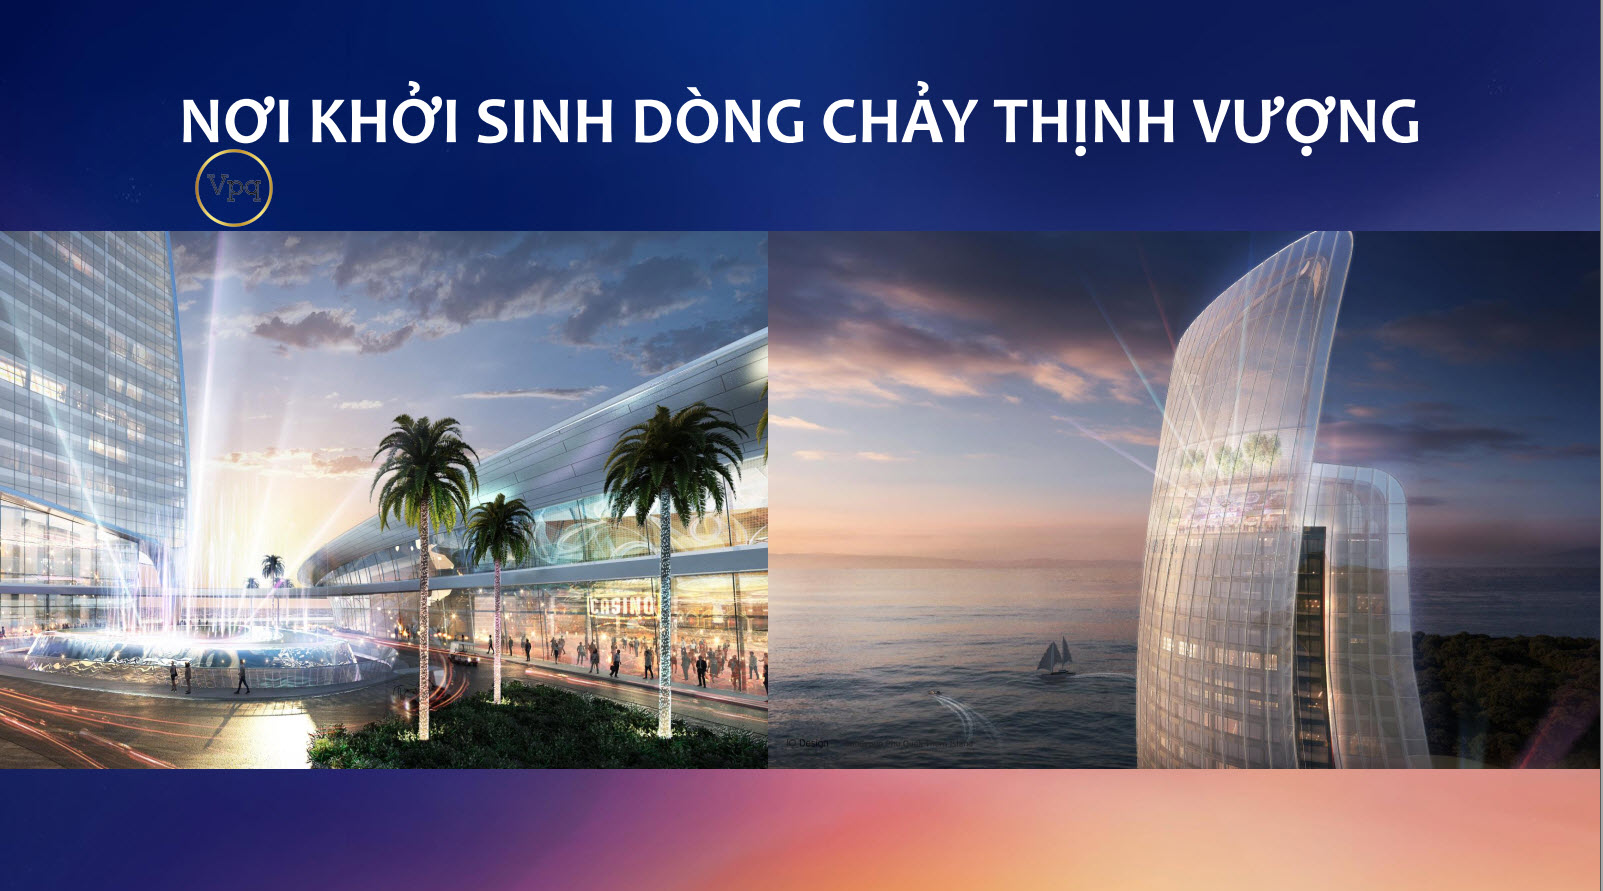 Trung tâm thương mại xa hoa và sầm uất bậc nhất Việt Nam tại đảo Thiên Đường